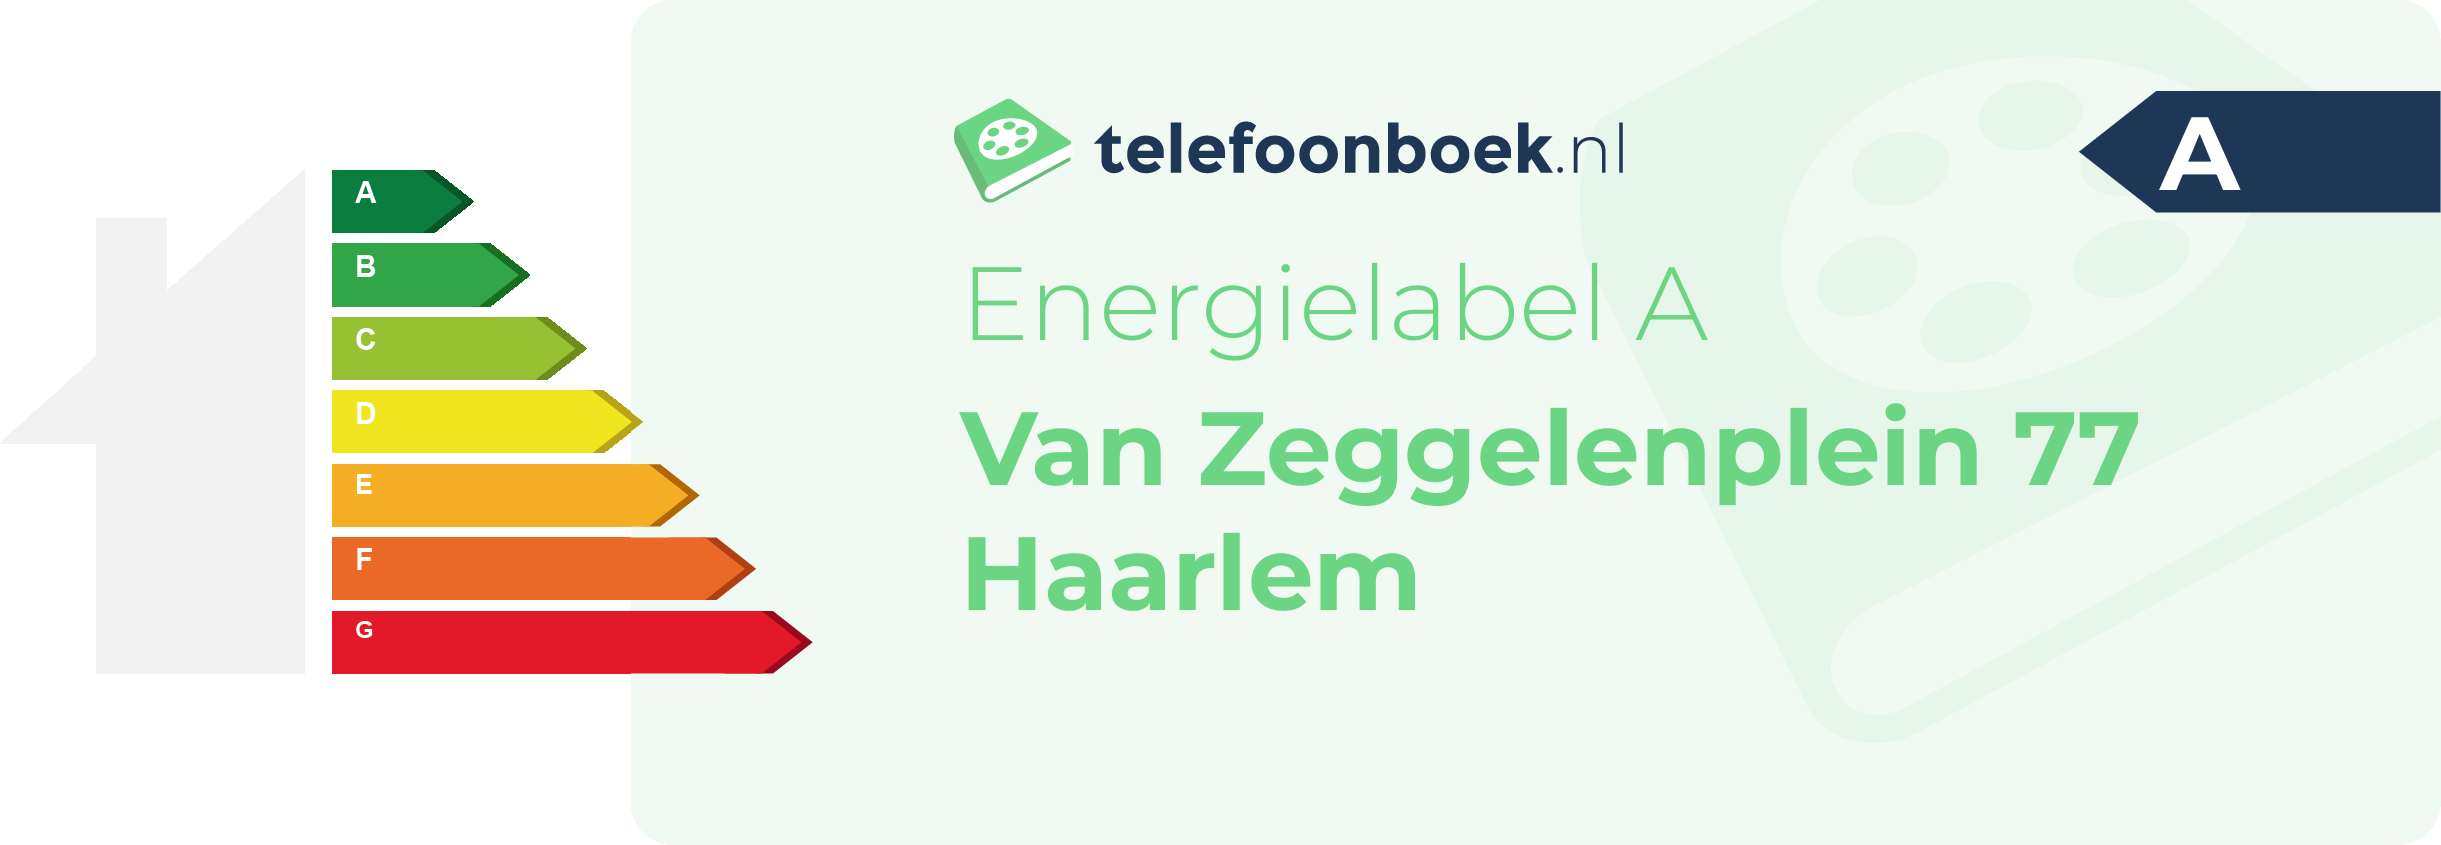 Energielabel Van Zeggelenplein 77 Haarlem